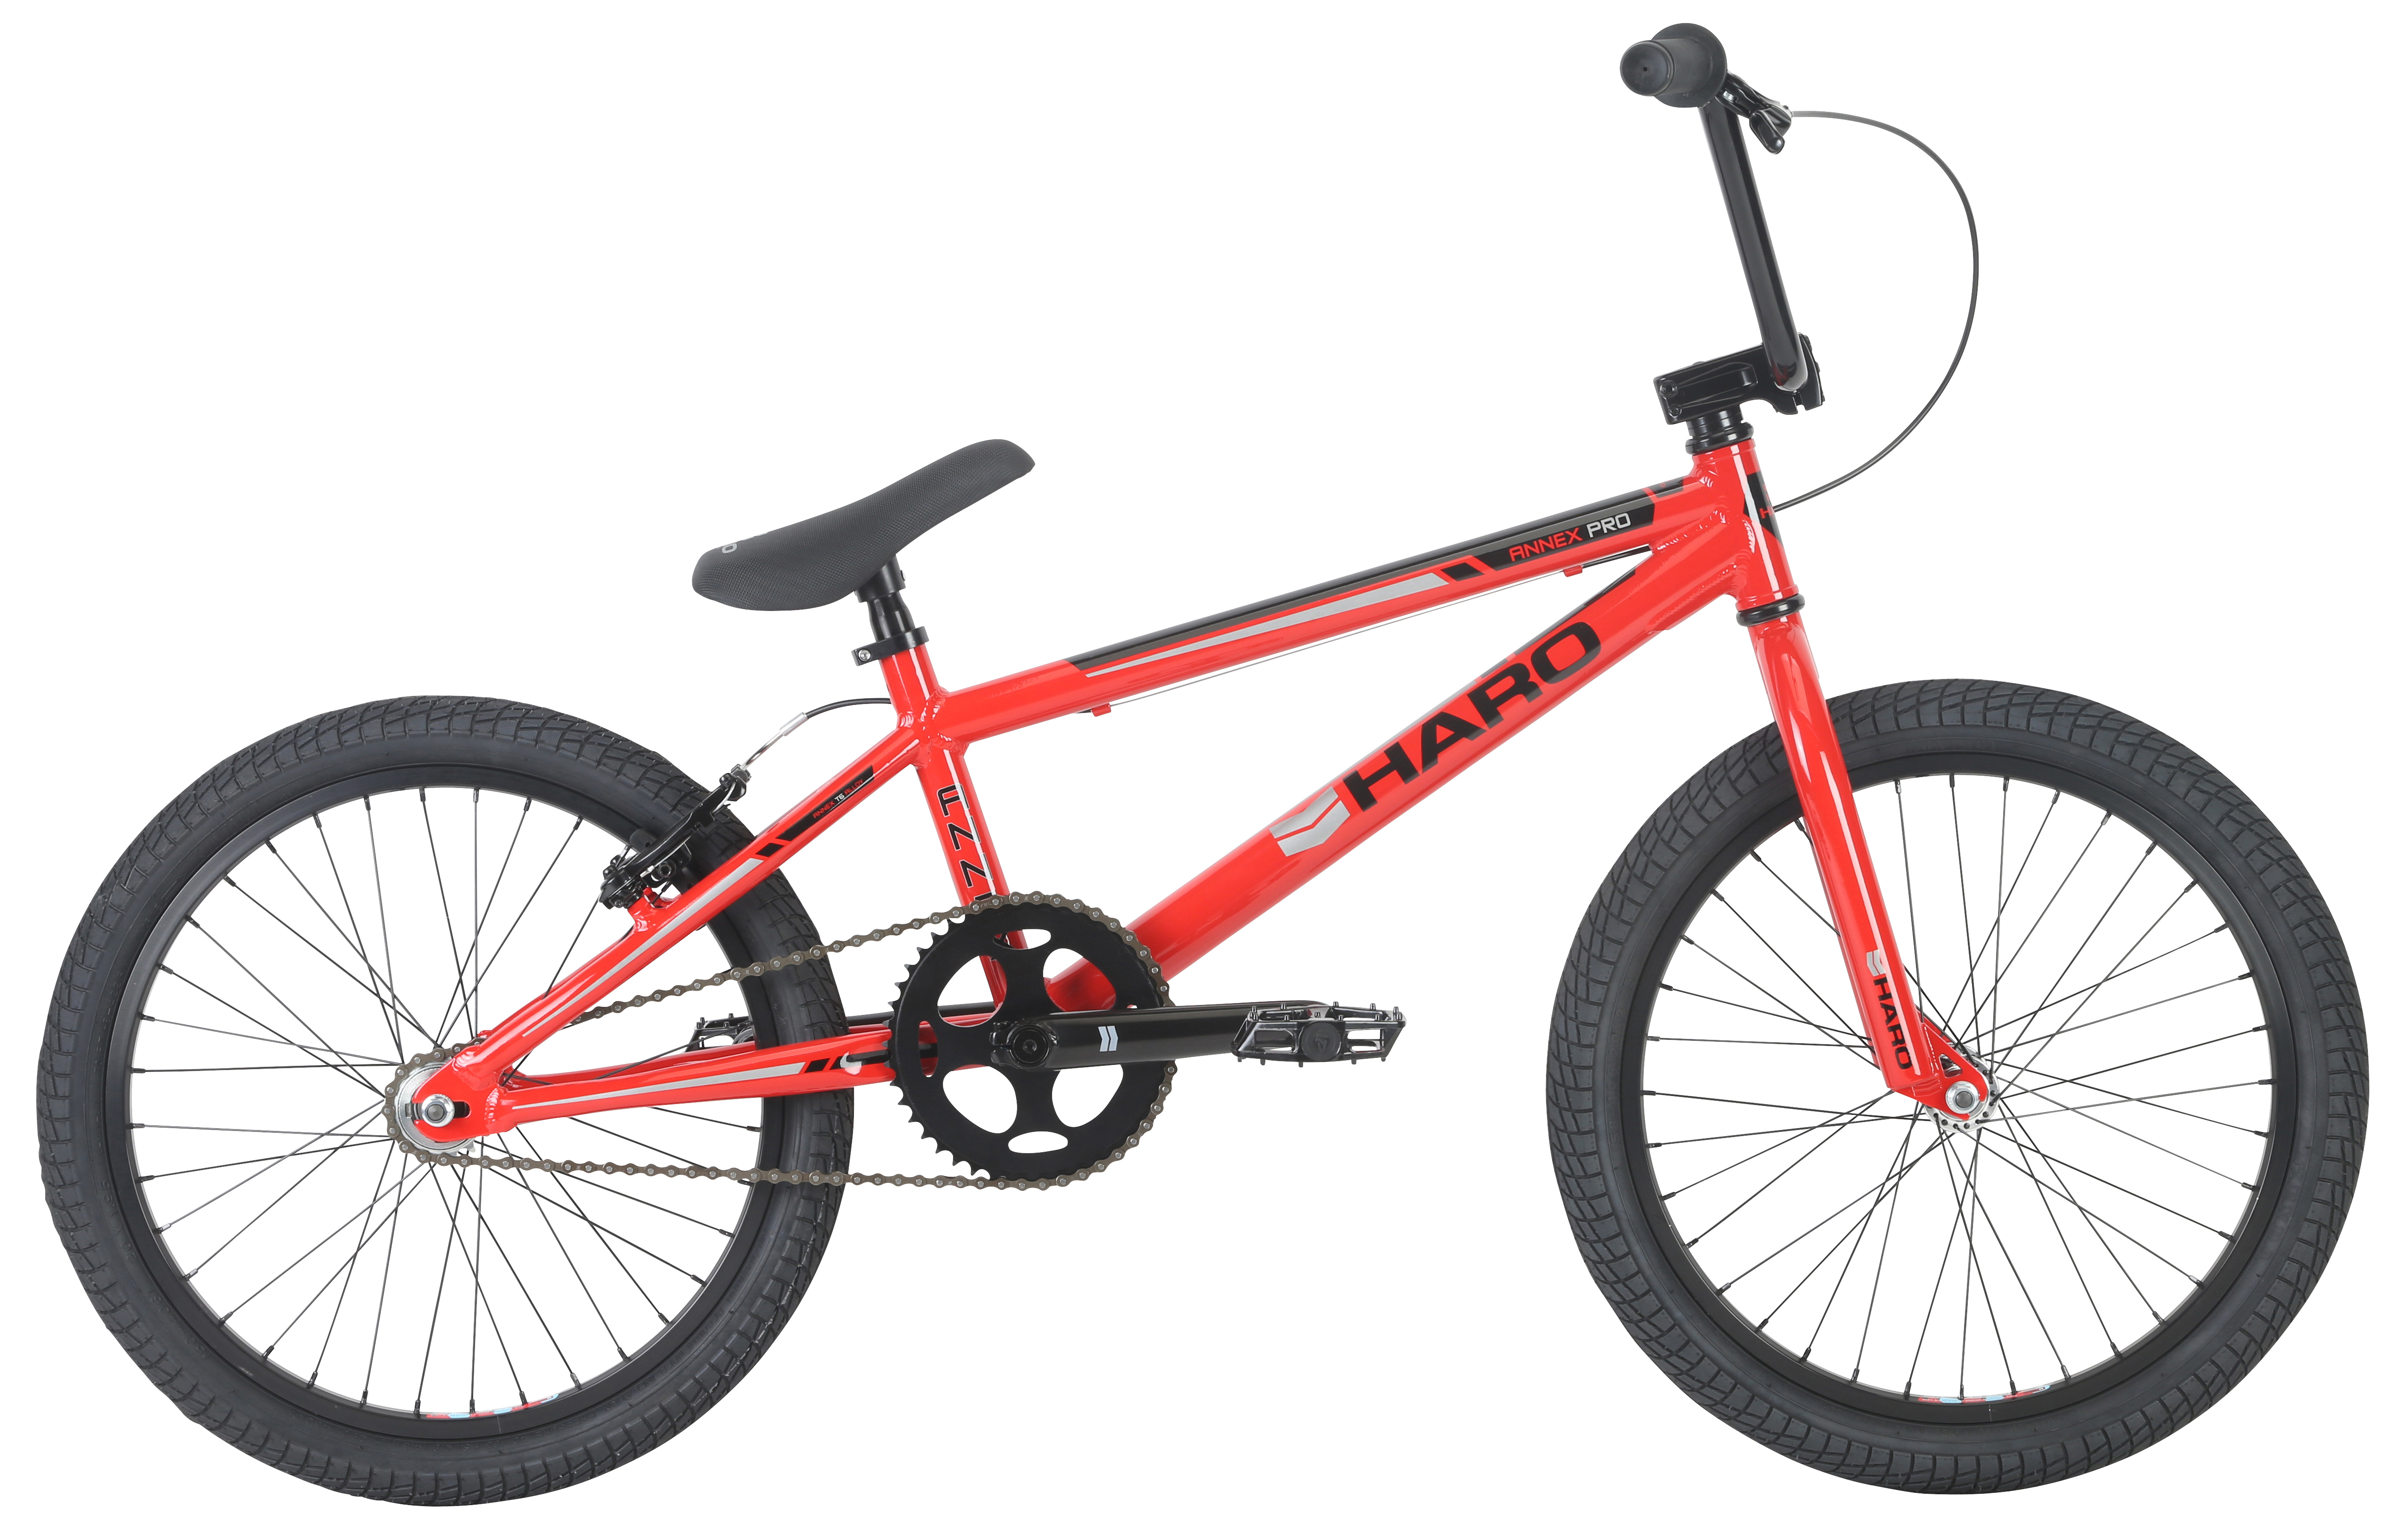  Велосипед Haro Annex Pro 2019